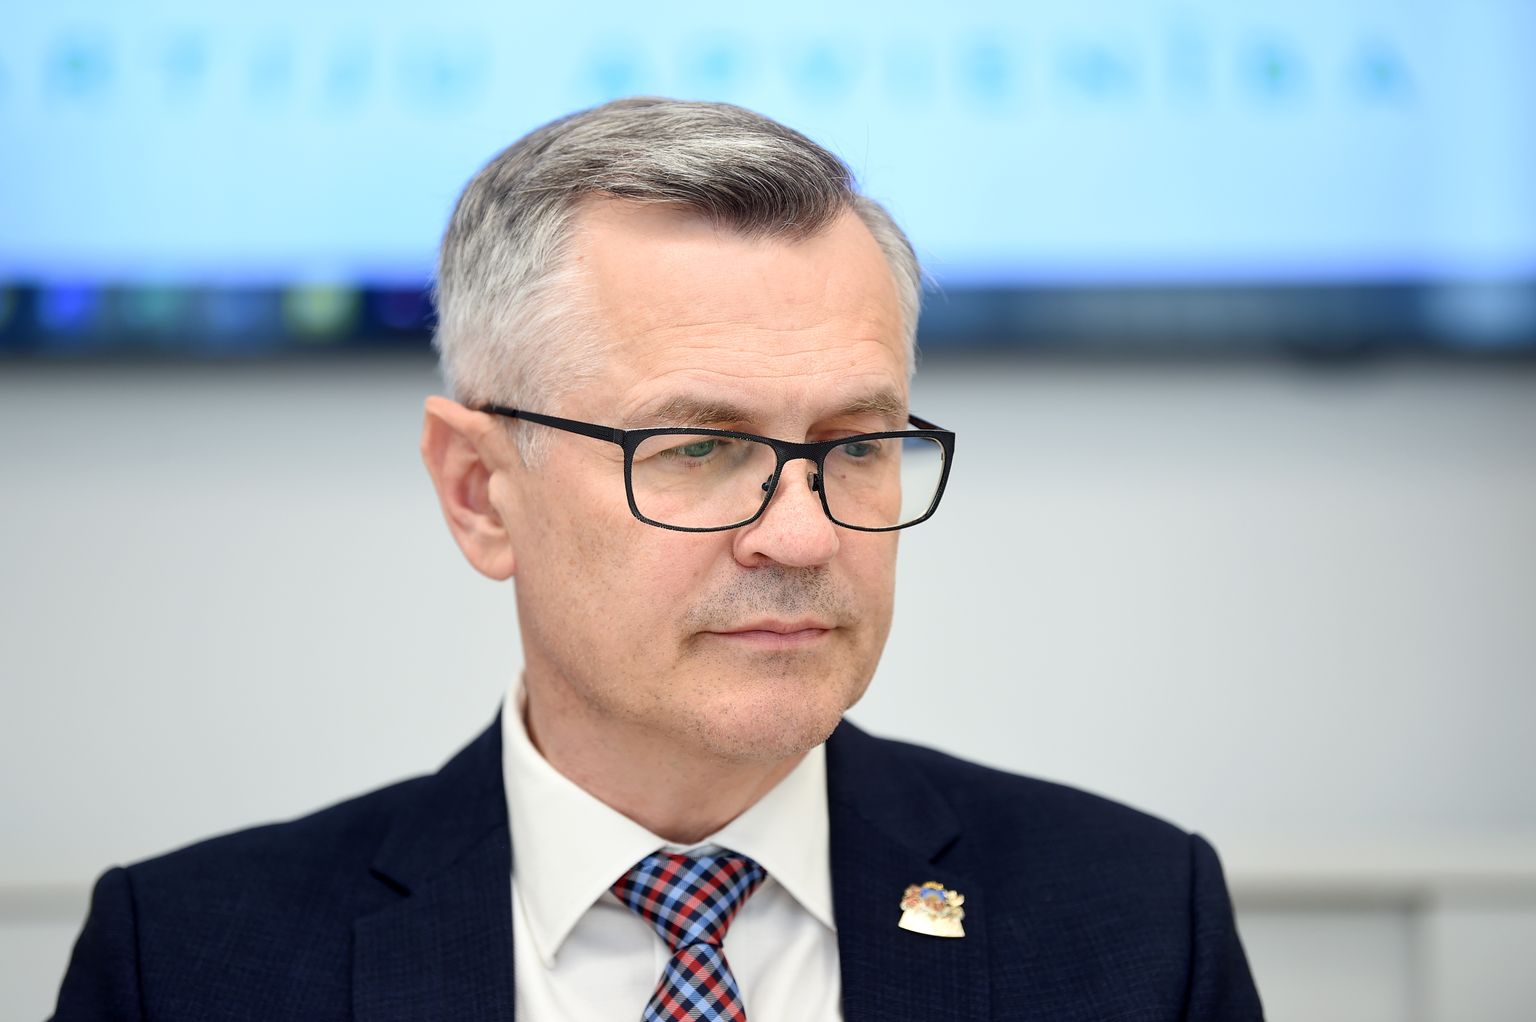 Premjera partijas "Jaunā vienotība" Saeimas frakcijas priekšsēdētājs Ainars Latkovskis